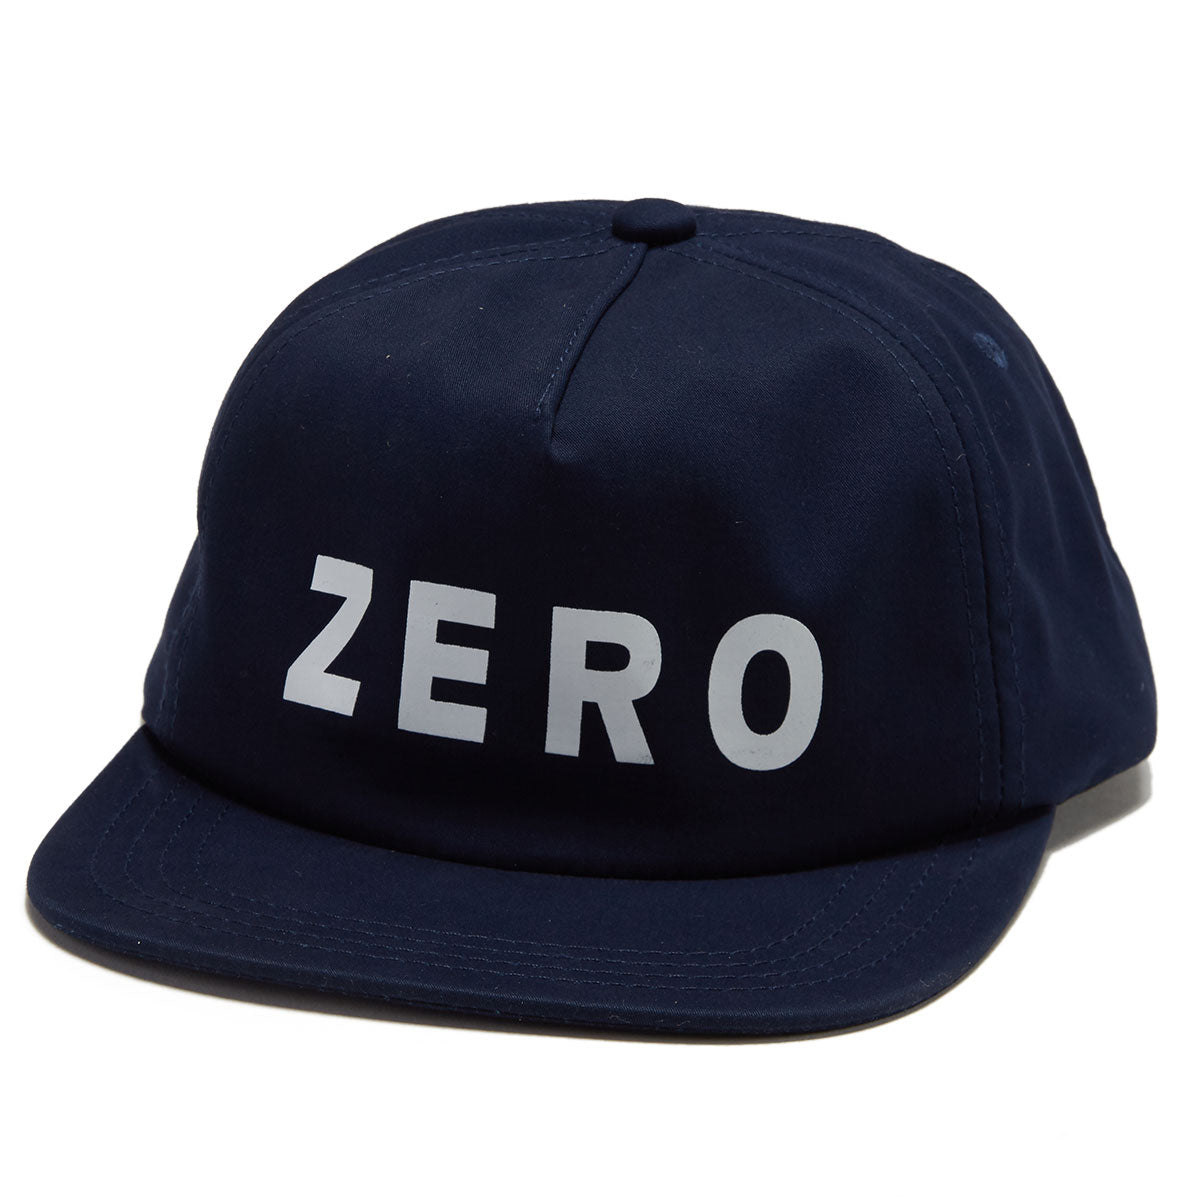 Zero Army Hat - Nacy image 1